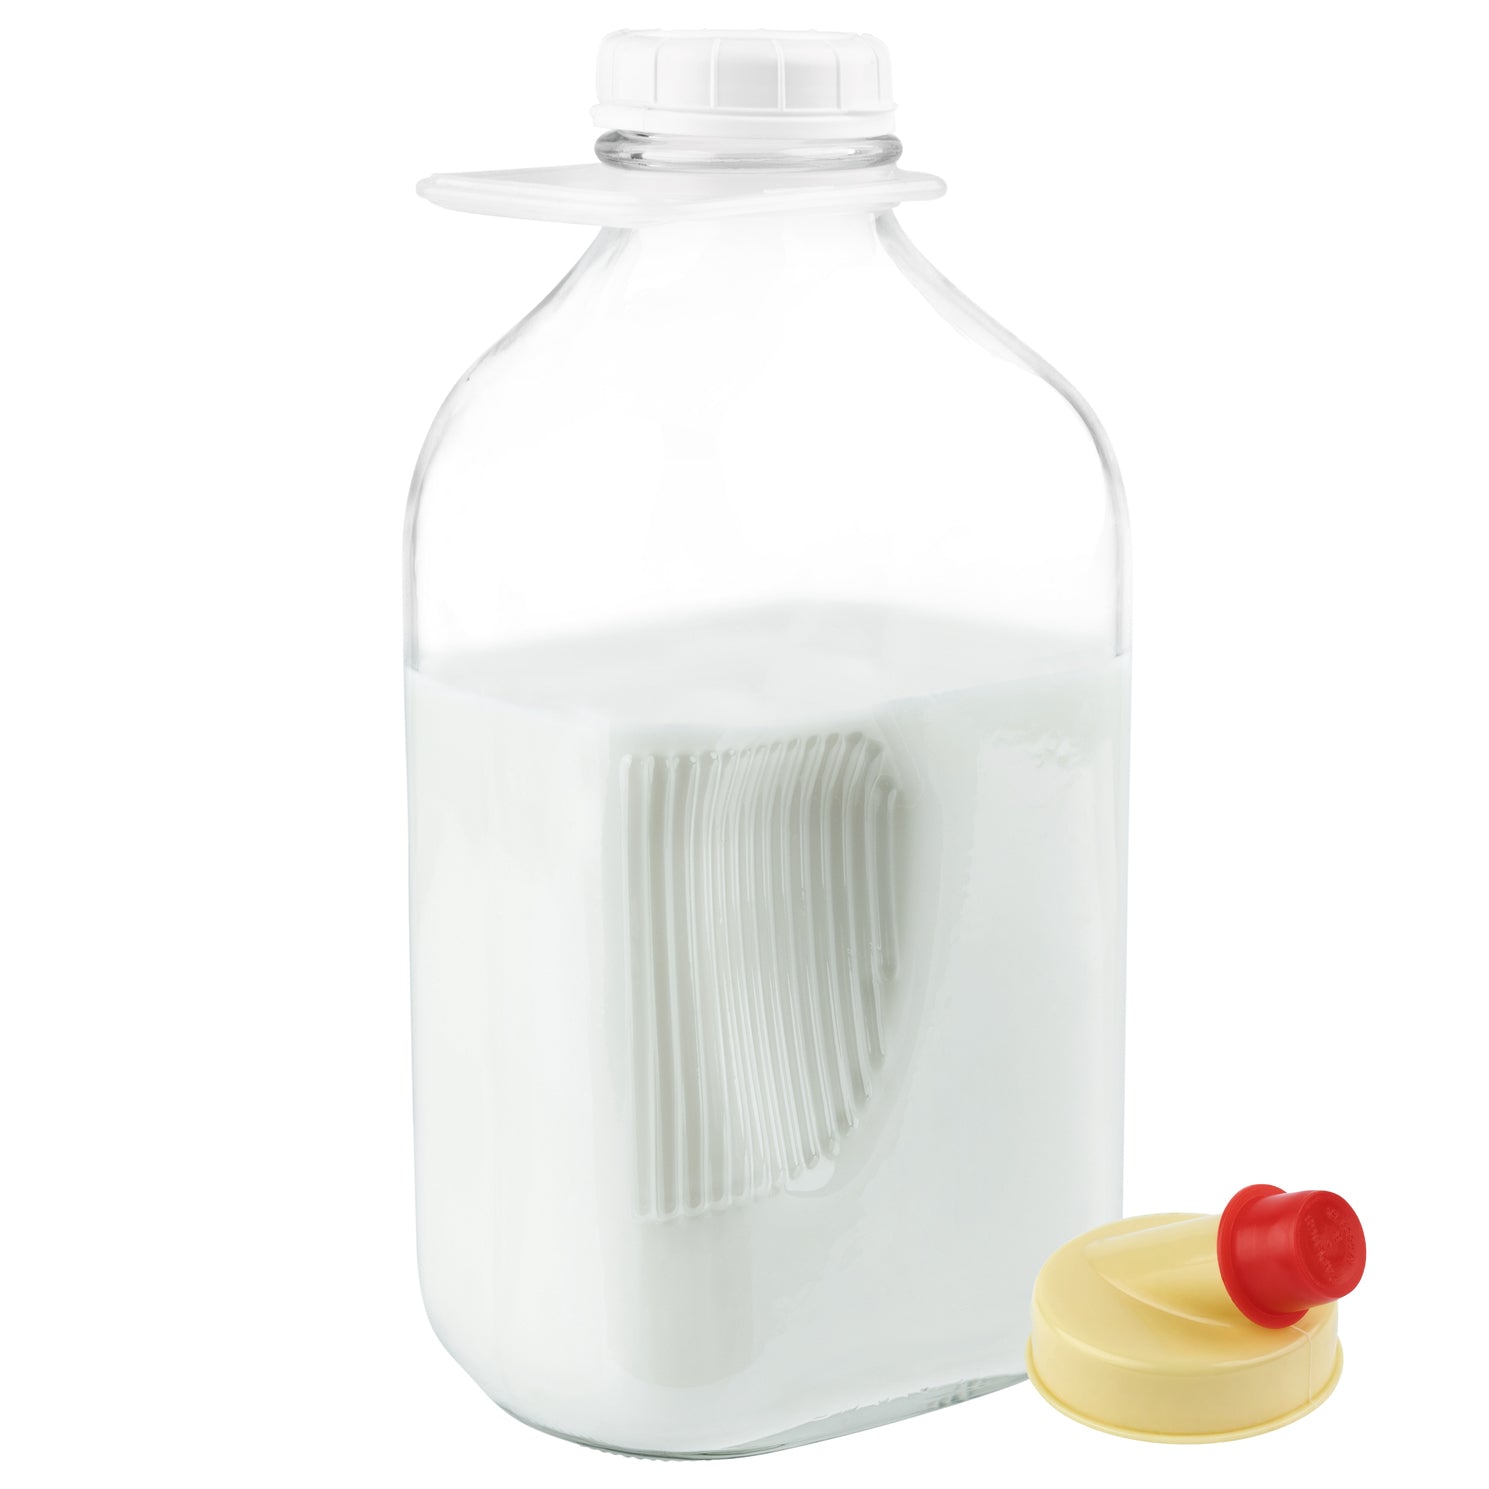 http://kitchentoolz.com/cdn/shop/products/J1822-MilkJugs-1.jpg?v=1651180314